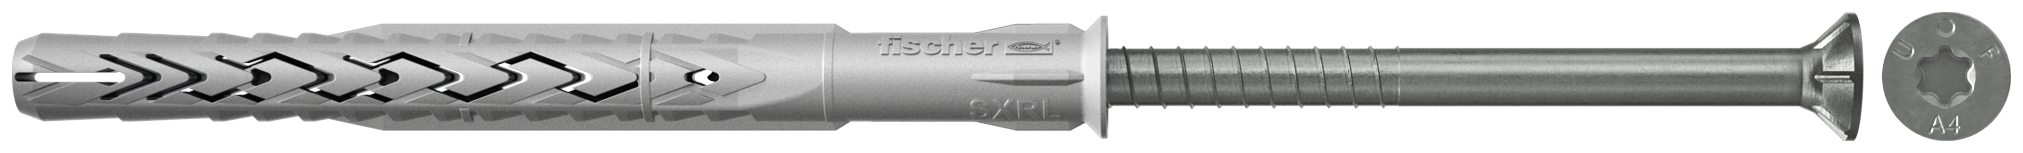 fischer Tasselli prolungati SXRL 8x80 T A4 (1 Pz.) Tassello prolungato in nylon con marcatura CE con vite premontata in acciaio inox A4, T.S.P. impronta torx.